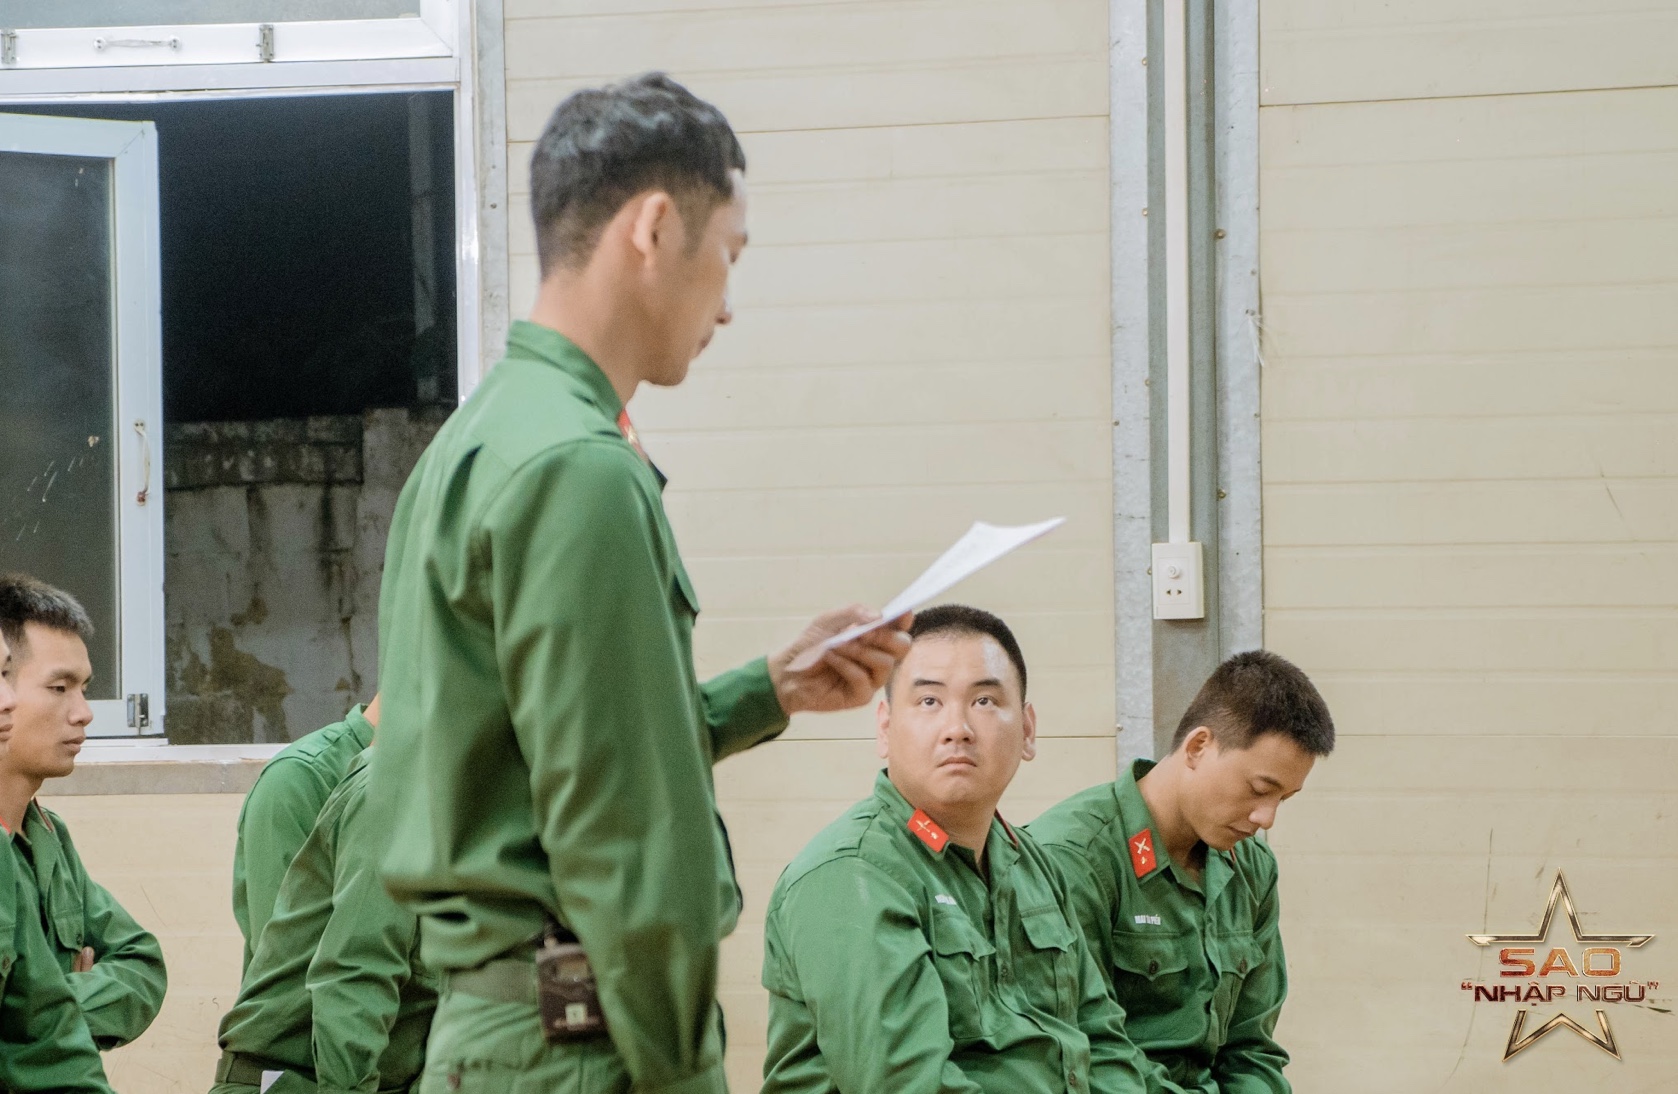 Tuấn Trần, Huỳnh Lập xúc động khi gặp gỡ người anh hùng trong trận đánh huyền thoại ở Quảng Trị- Ảnh 3.